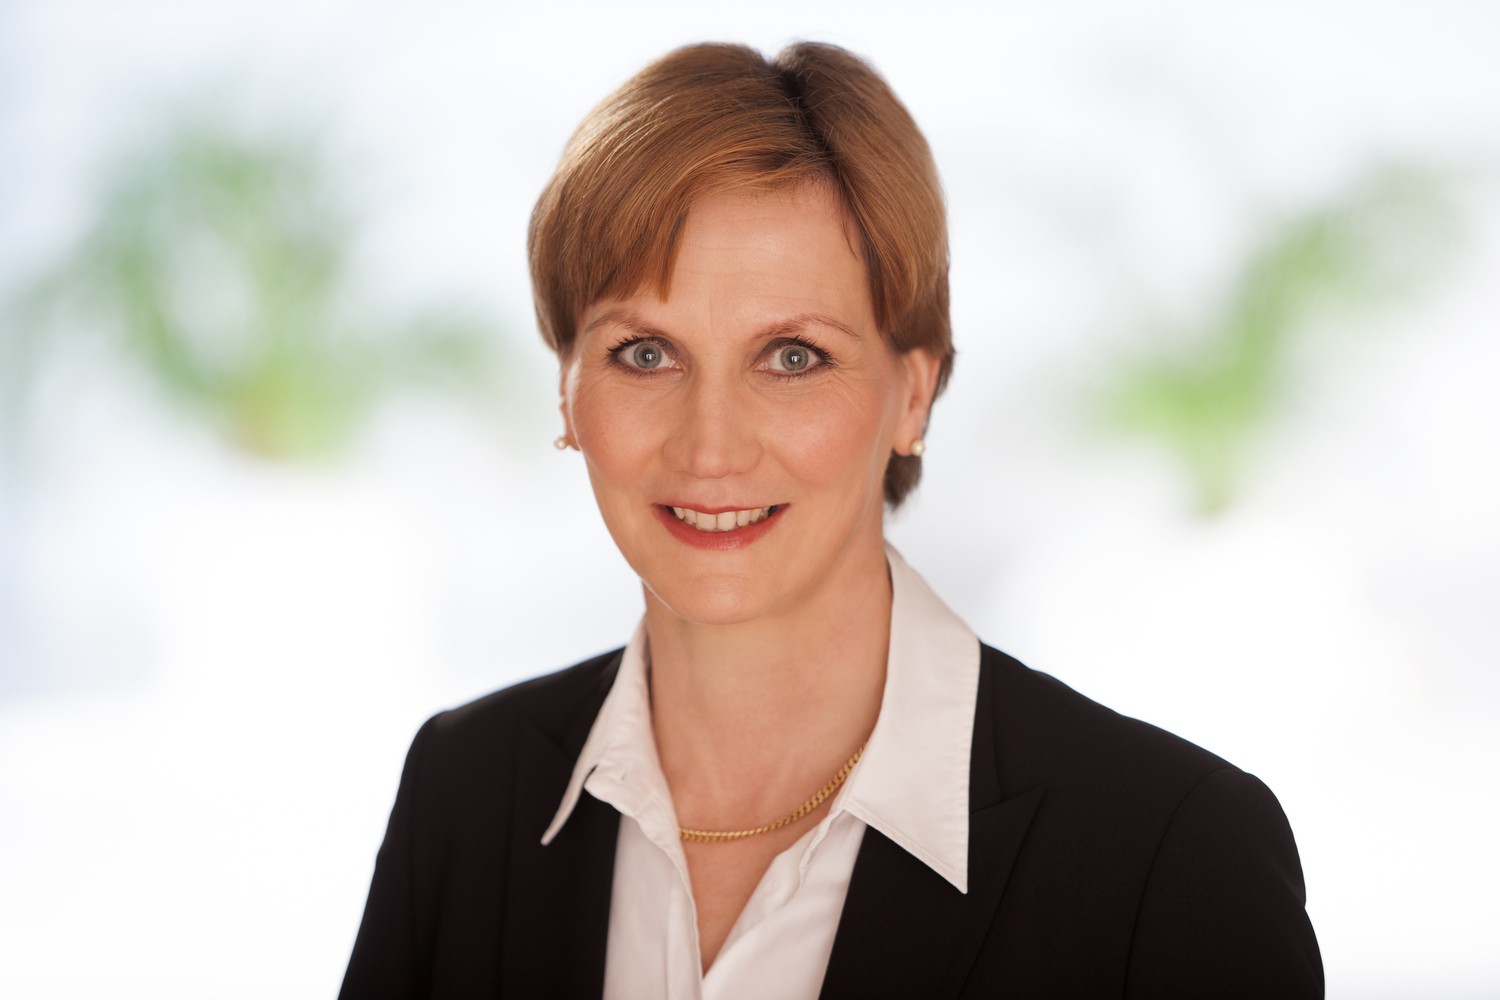 Prof. Ines Gockel,  Leiterin des Bereichs Viszeralchirurgie und Wissenschaftliche Leiterin des Patiententages, freut sich über die angekündigte Gründung der ersten Barrett-Selbsthilfegruppe Deutschlands.